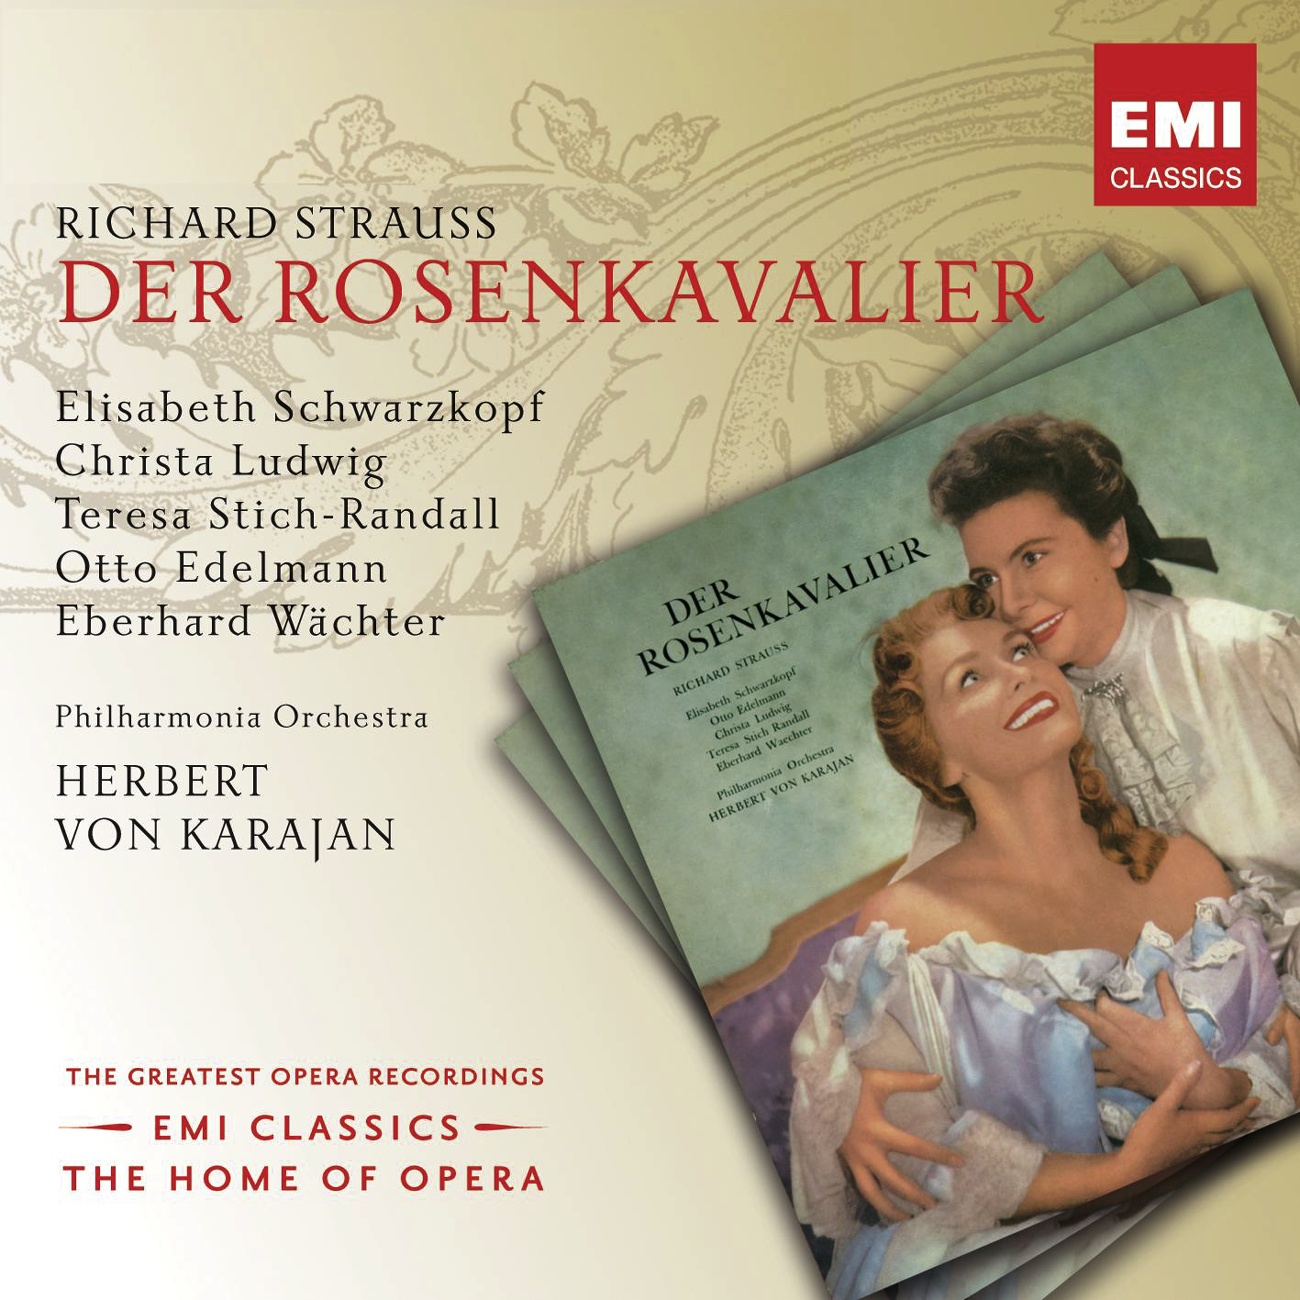 Der Rosenkavalier (2001 Digital Remaster), Act III: Nein, nein, nein, nein! I trink' kein Wein (Octavian/Ochs)